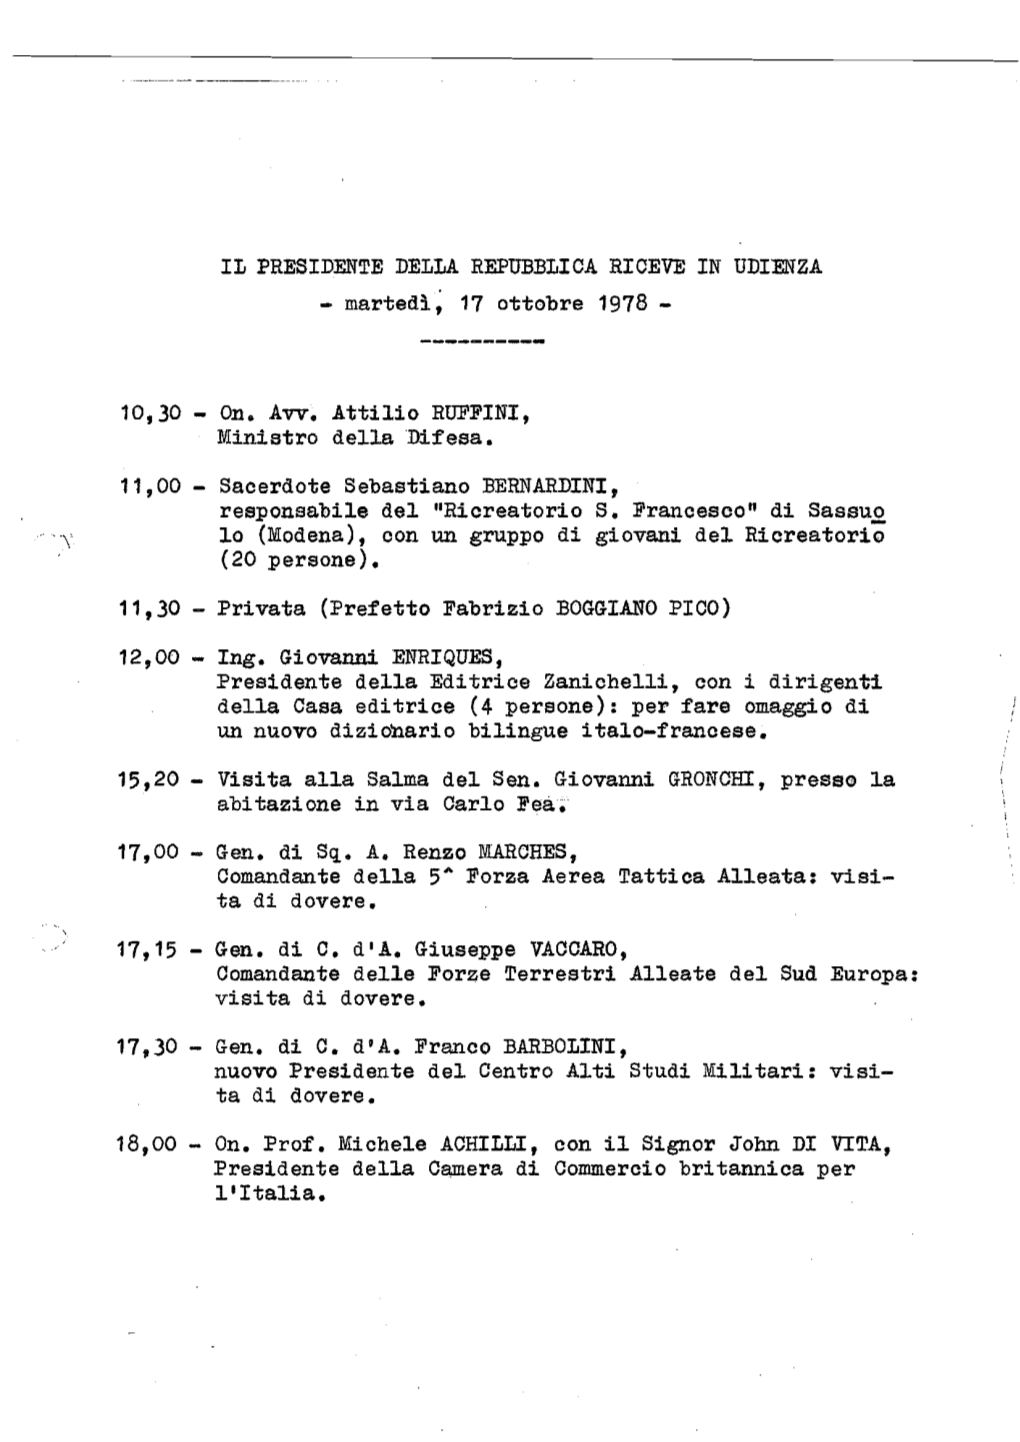 II PRESIDENTE DELLA REPUBBLICA RICEVE in UDIENZA - Martedì, 17 Ottobre 1978